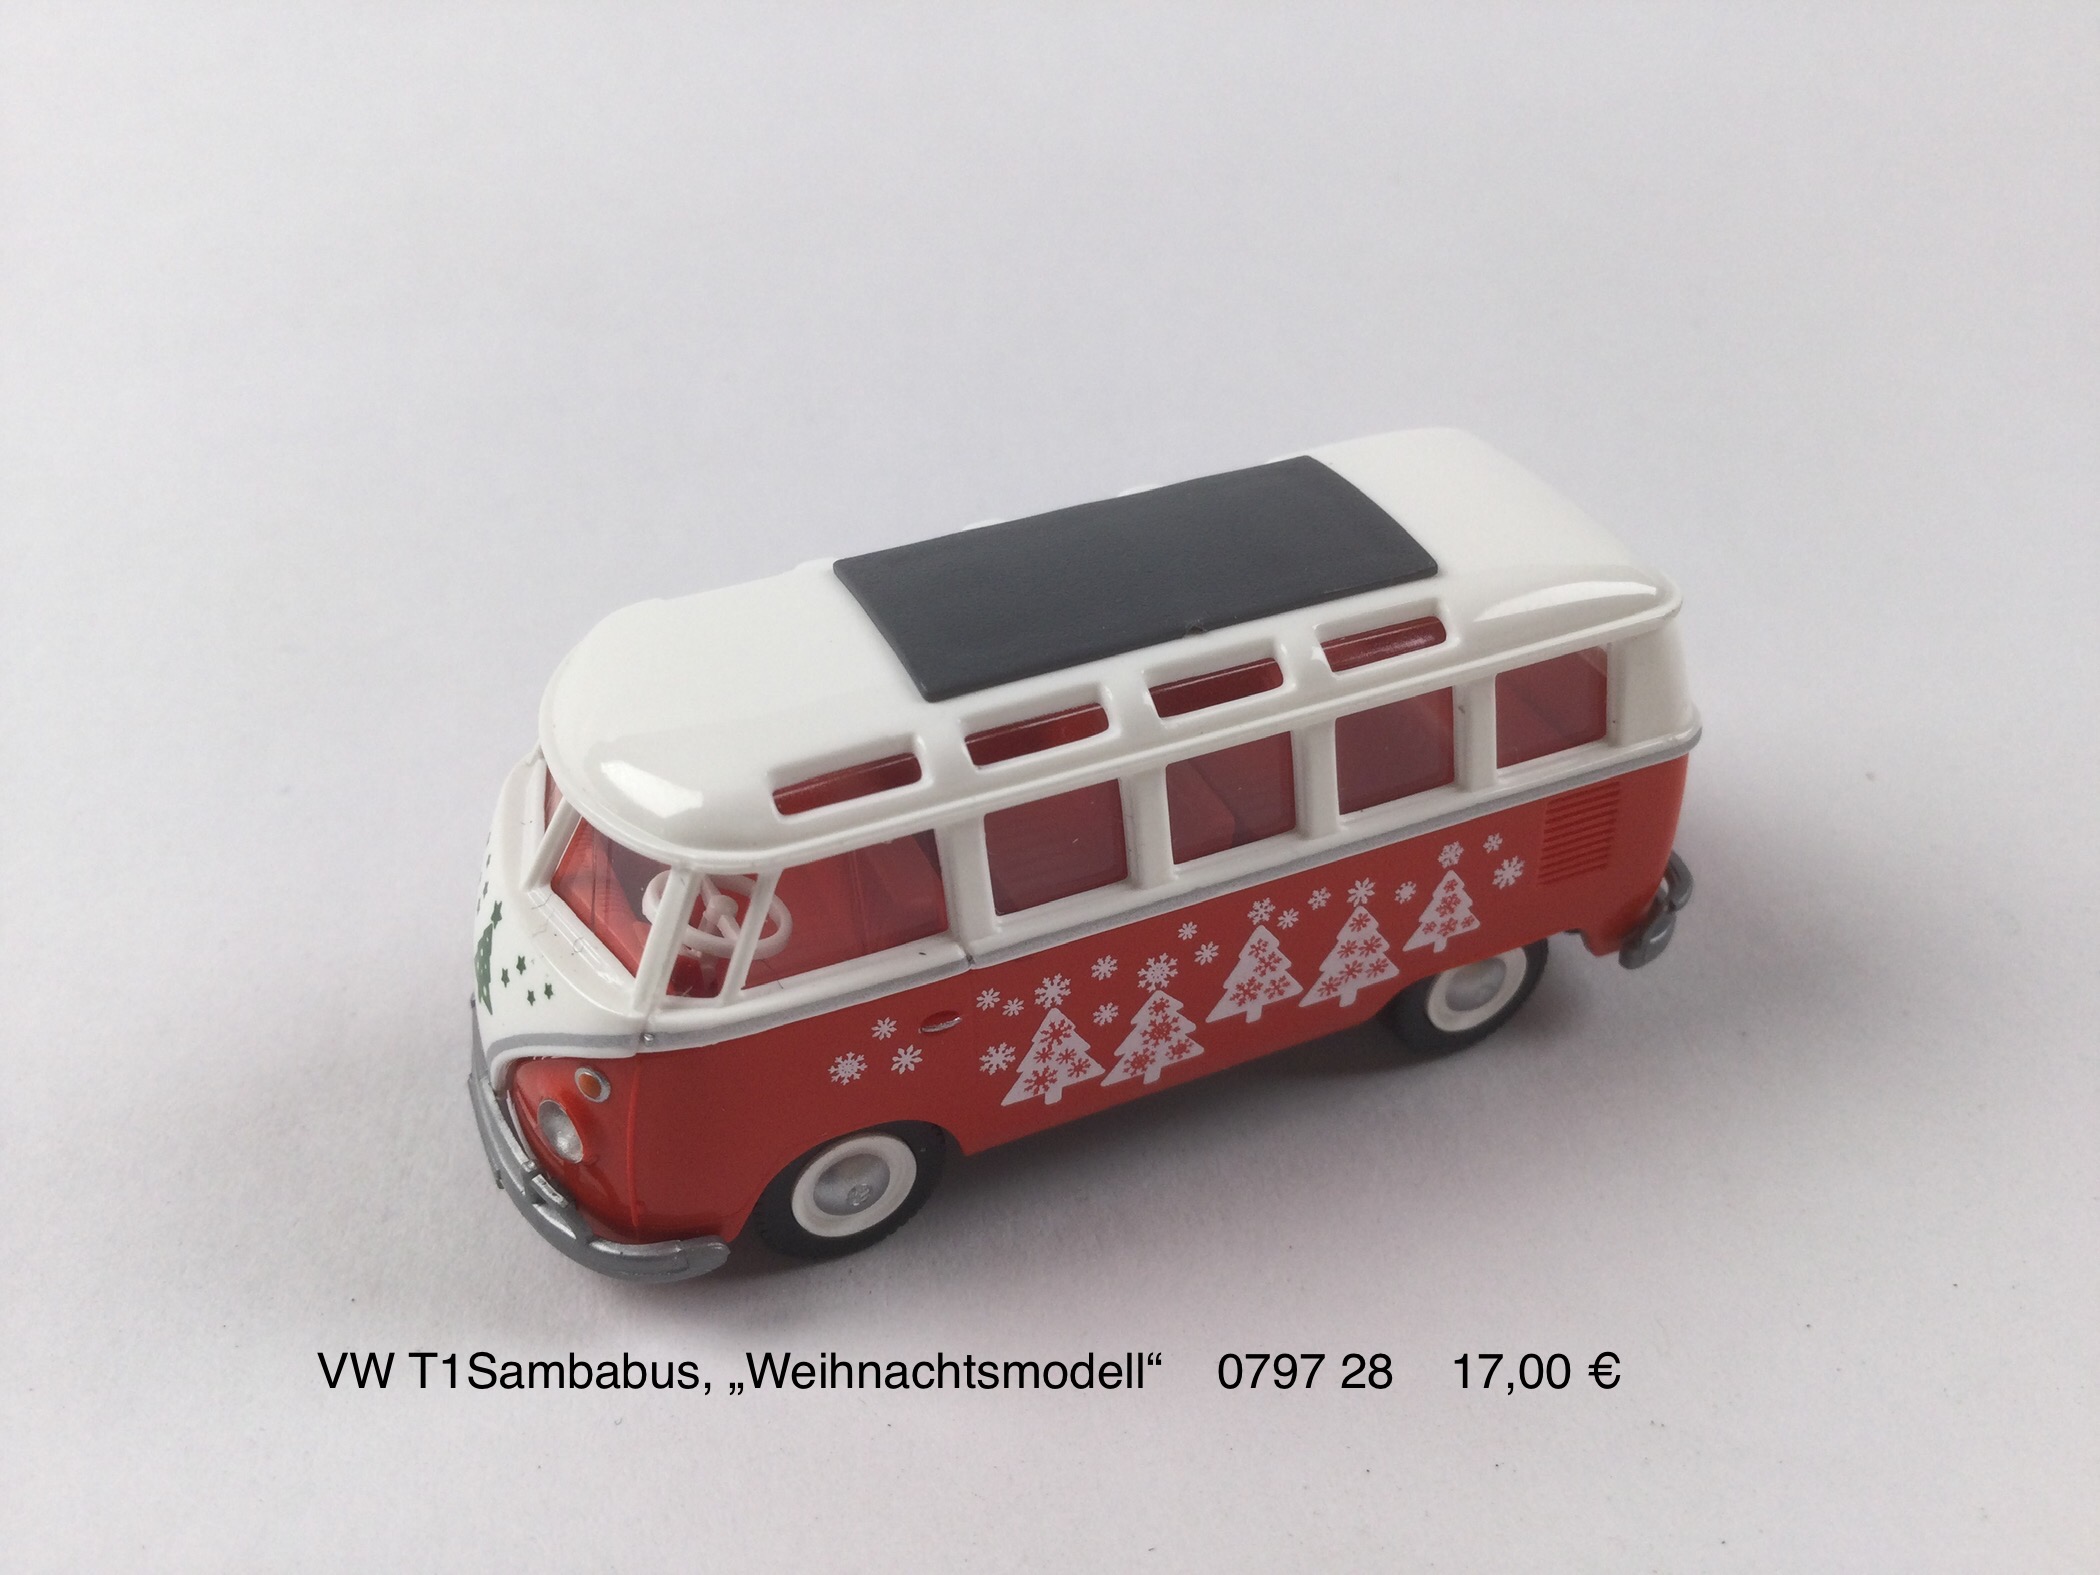 VW T1 Sambabus  "Weihnachtsmodell"